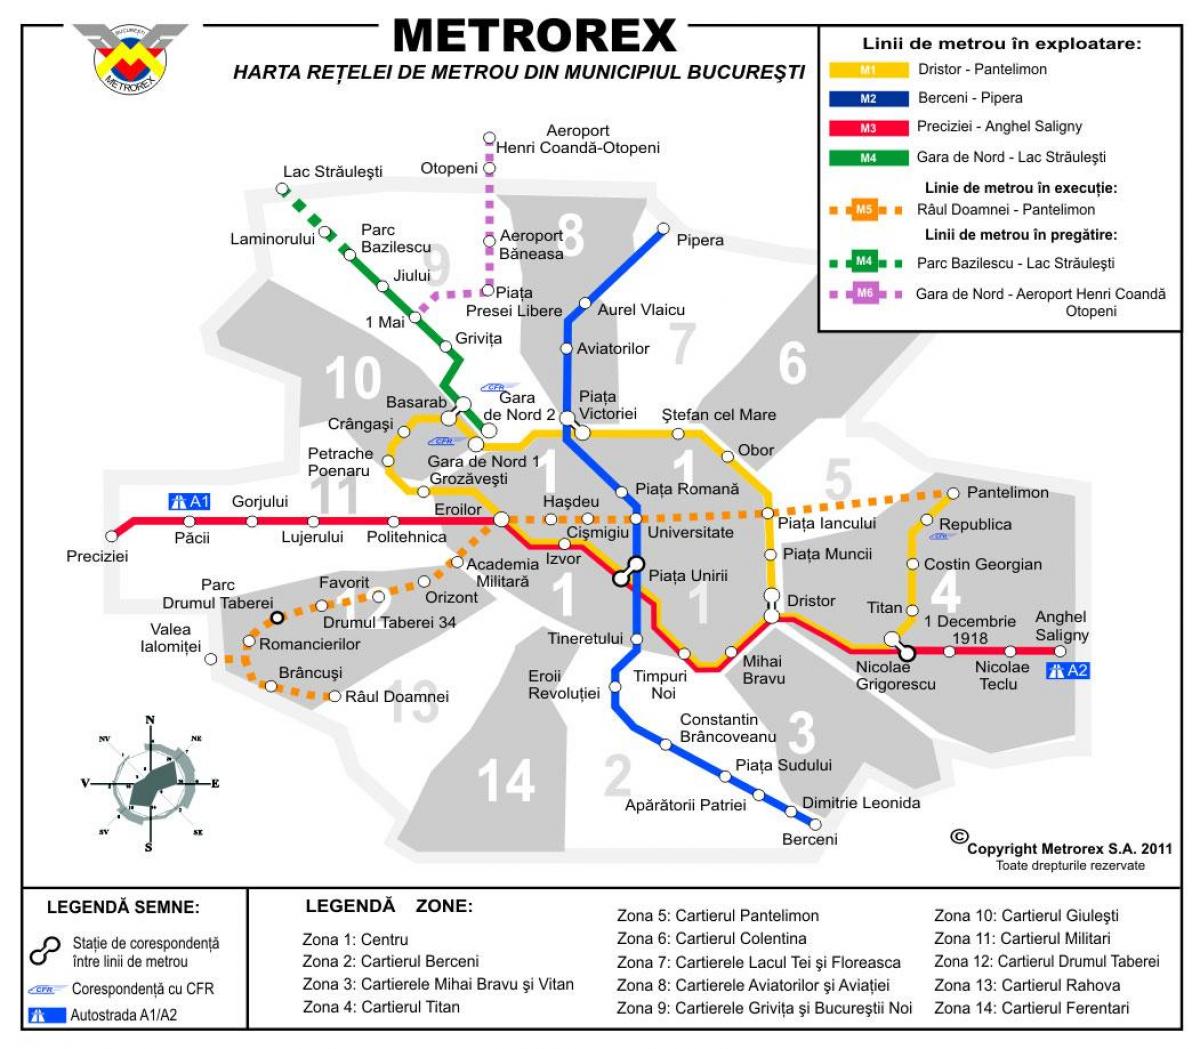 Carte de metrorex 